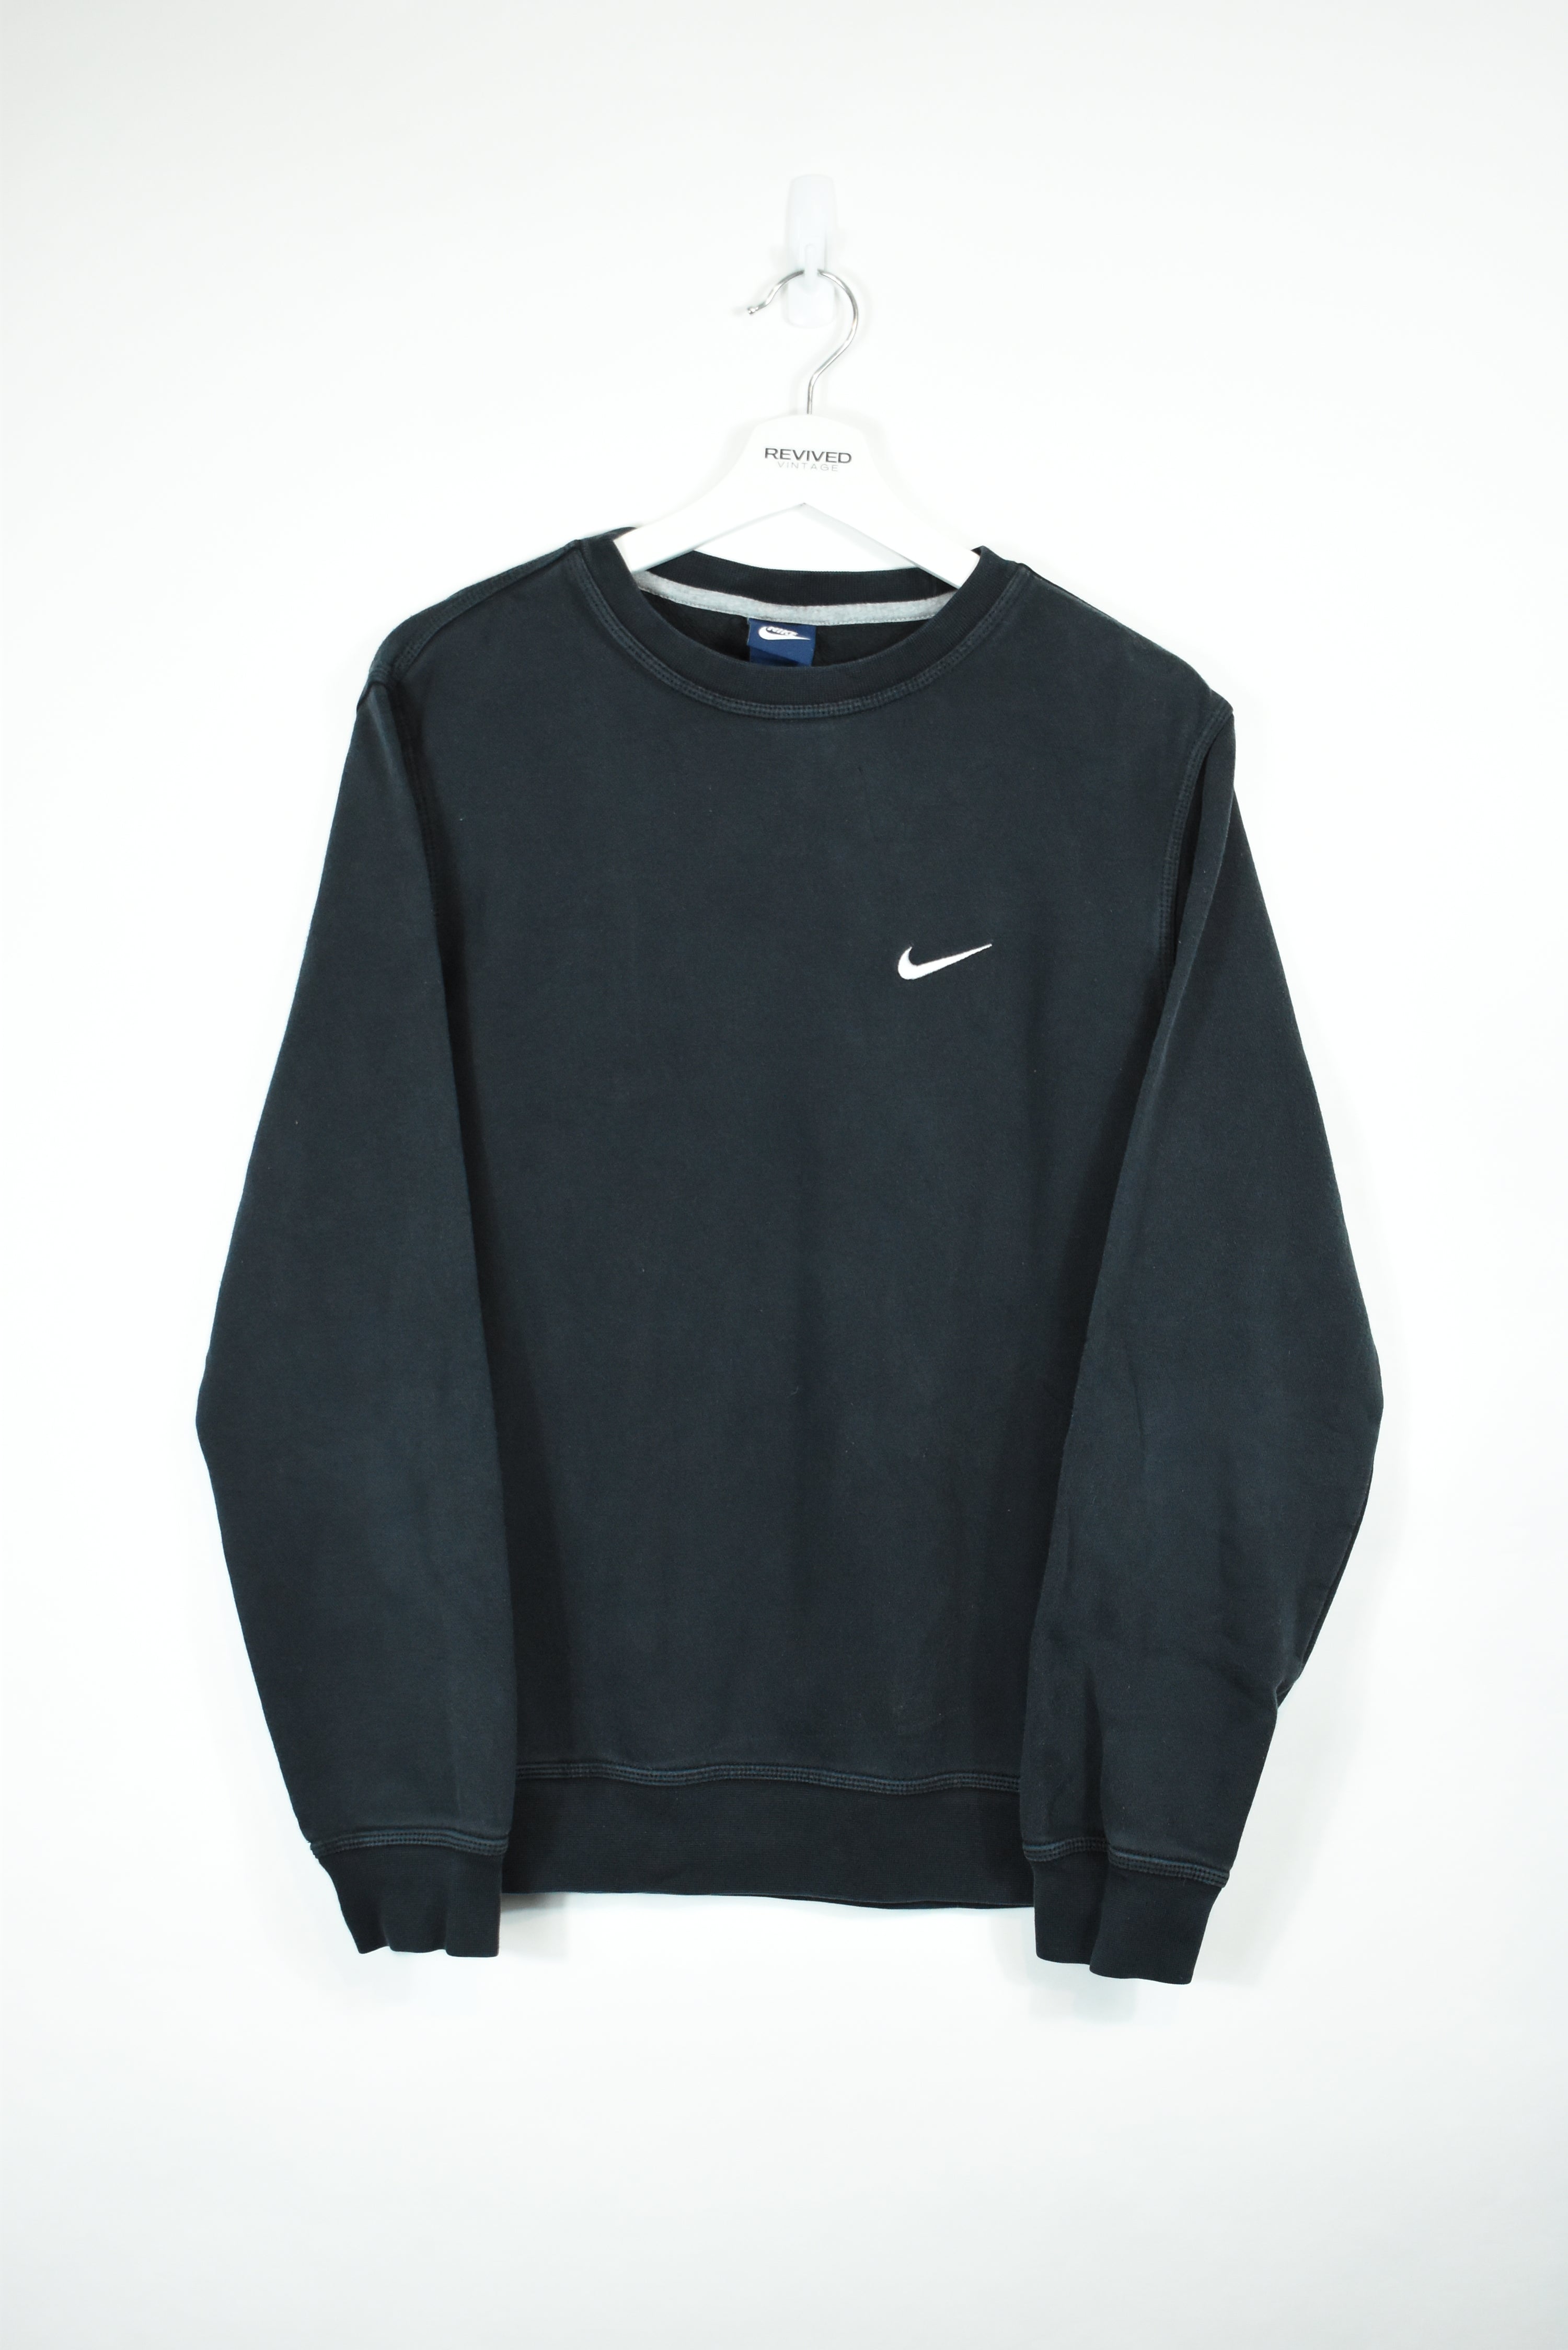 Vintage Nike Small Swoosh Sweatshirt MEDIUM